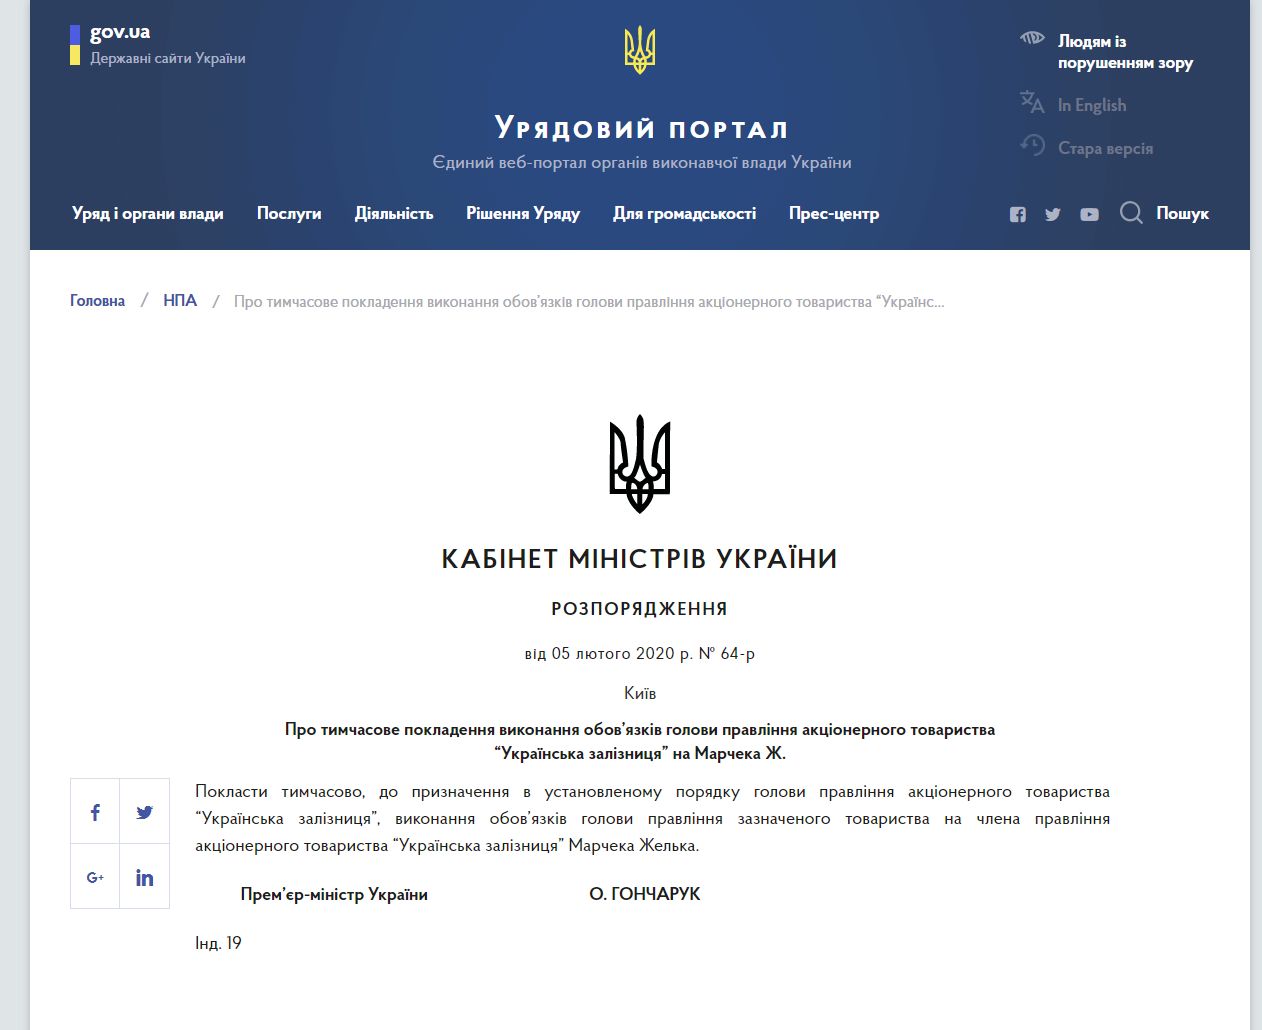 https://www.kmu.gov.ua/npas/pro-timchasove-pokladennya-vikonannm050220ya-obovyazkiv-golovi-pravlinnya-akcionernogo-tovaristva-ukrayinska-zaliznicya-na-marcheka-zh